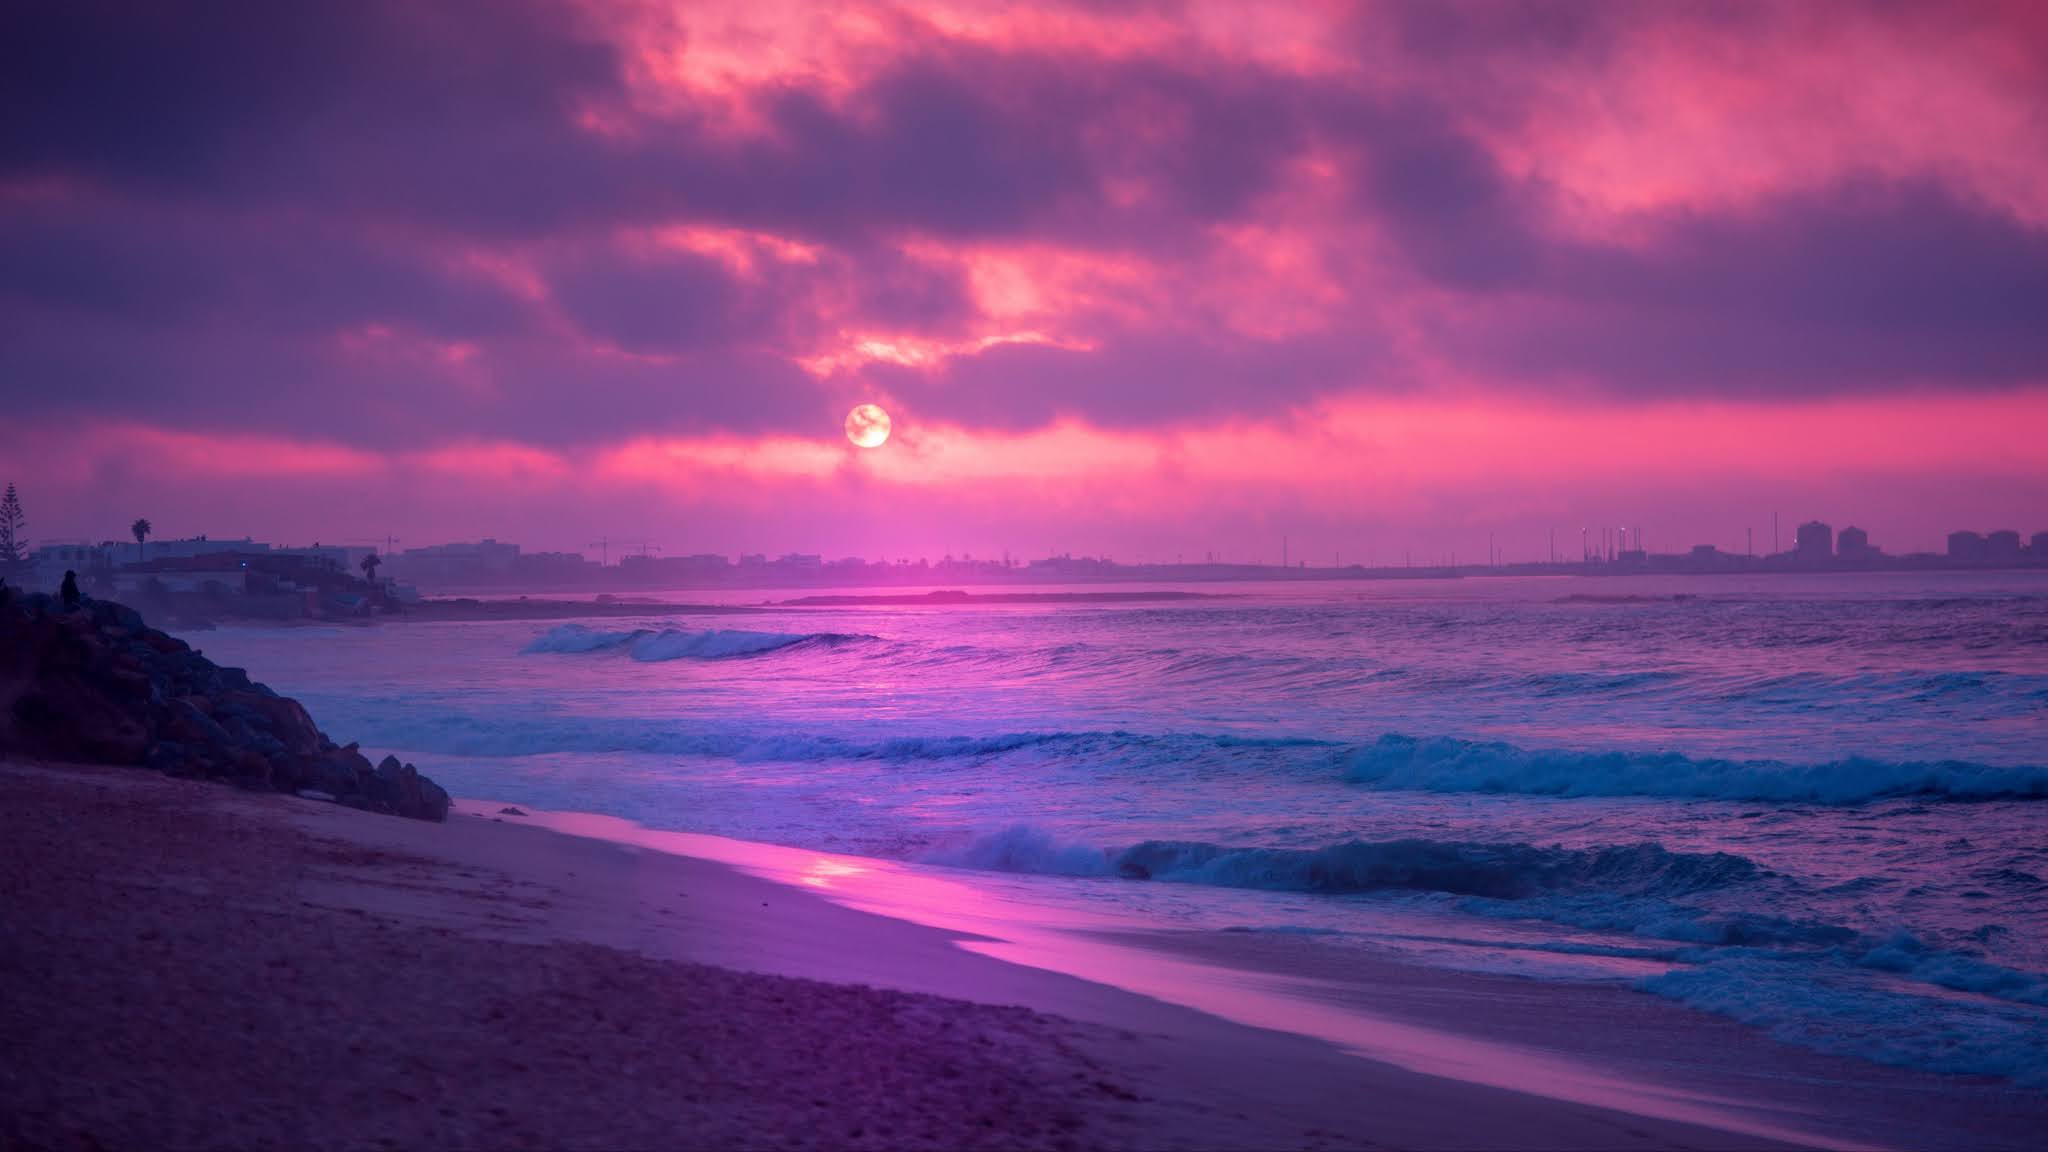 Pink Beach Sunset HD Wallpapers - Top Free Pink Beach Sunset HD